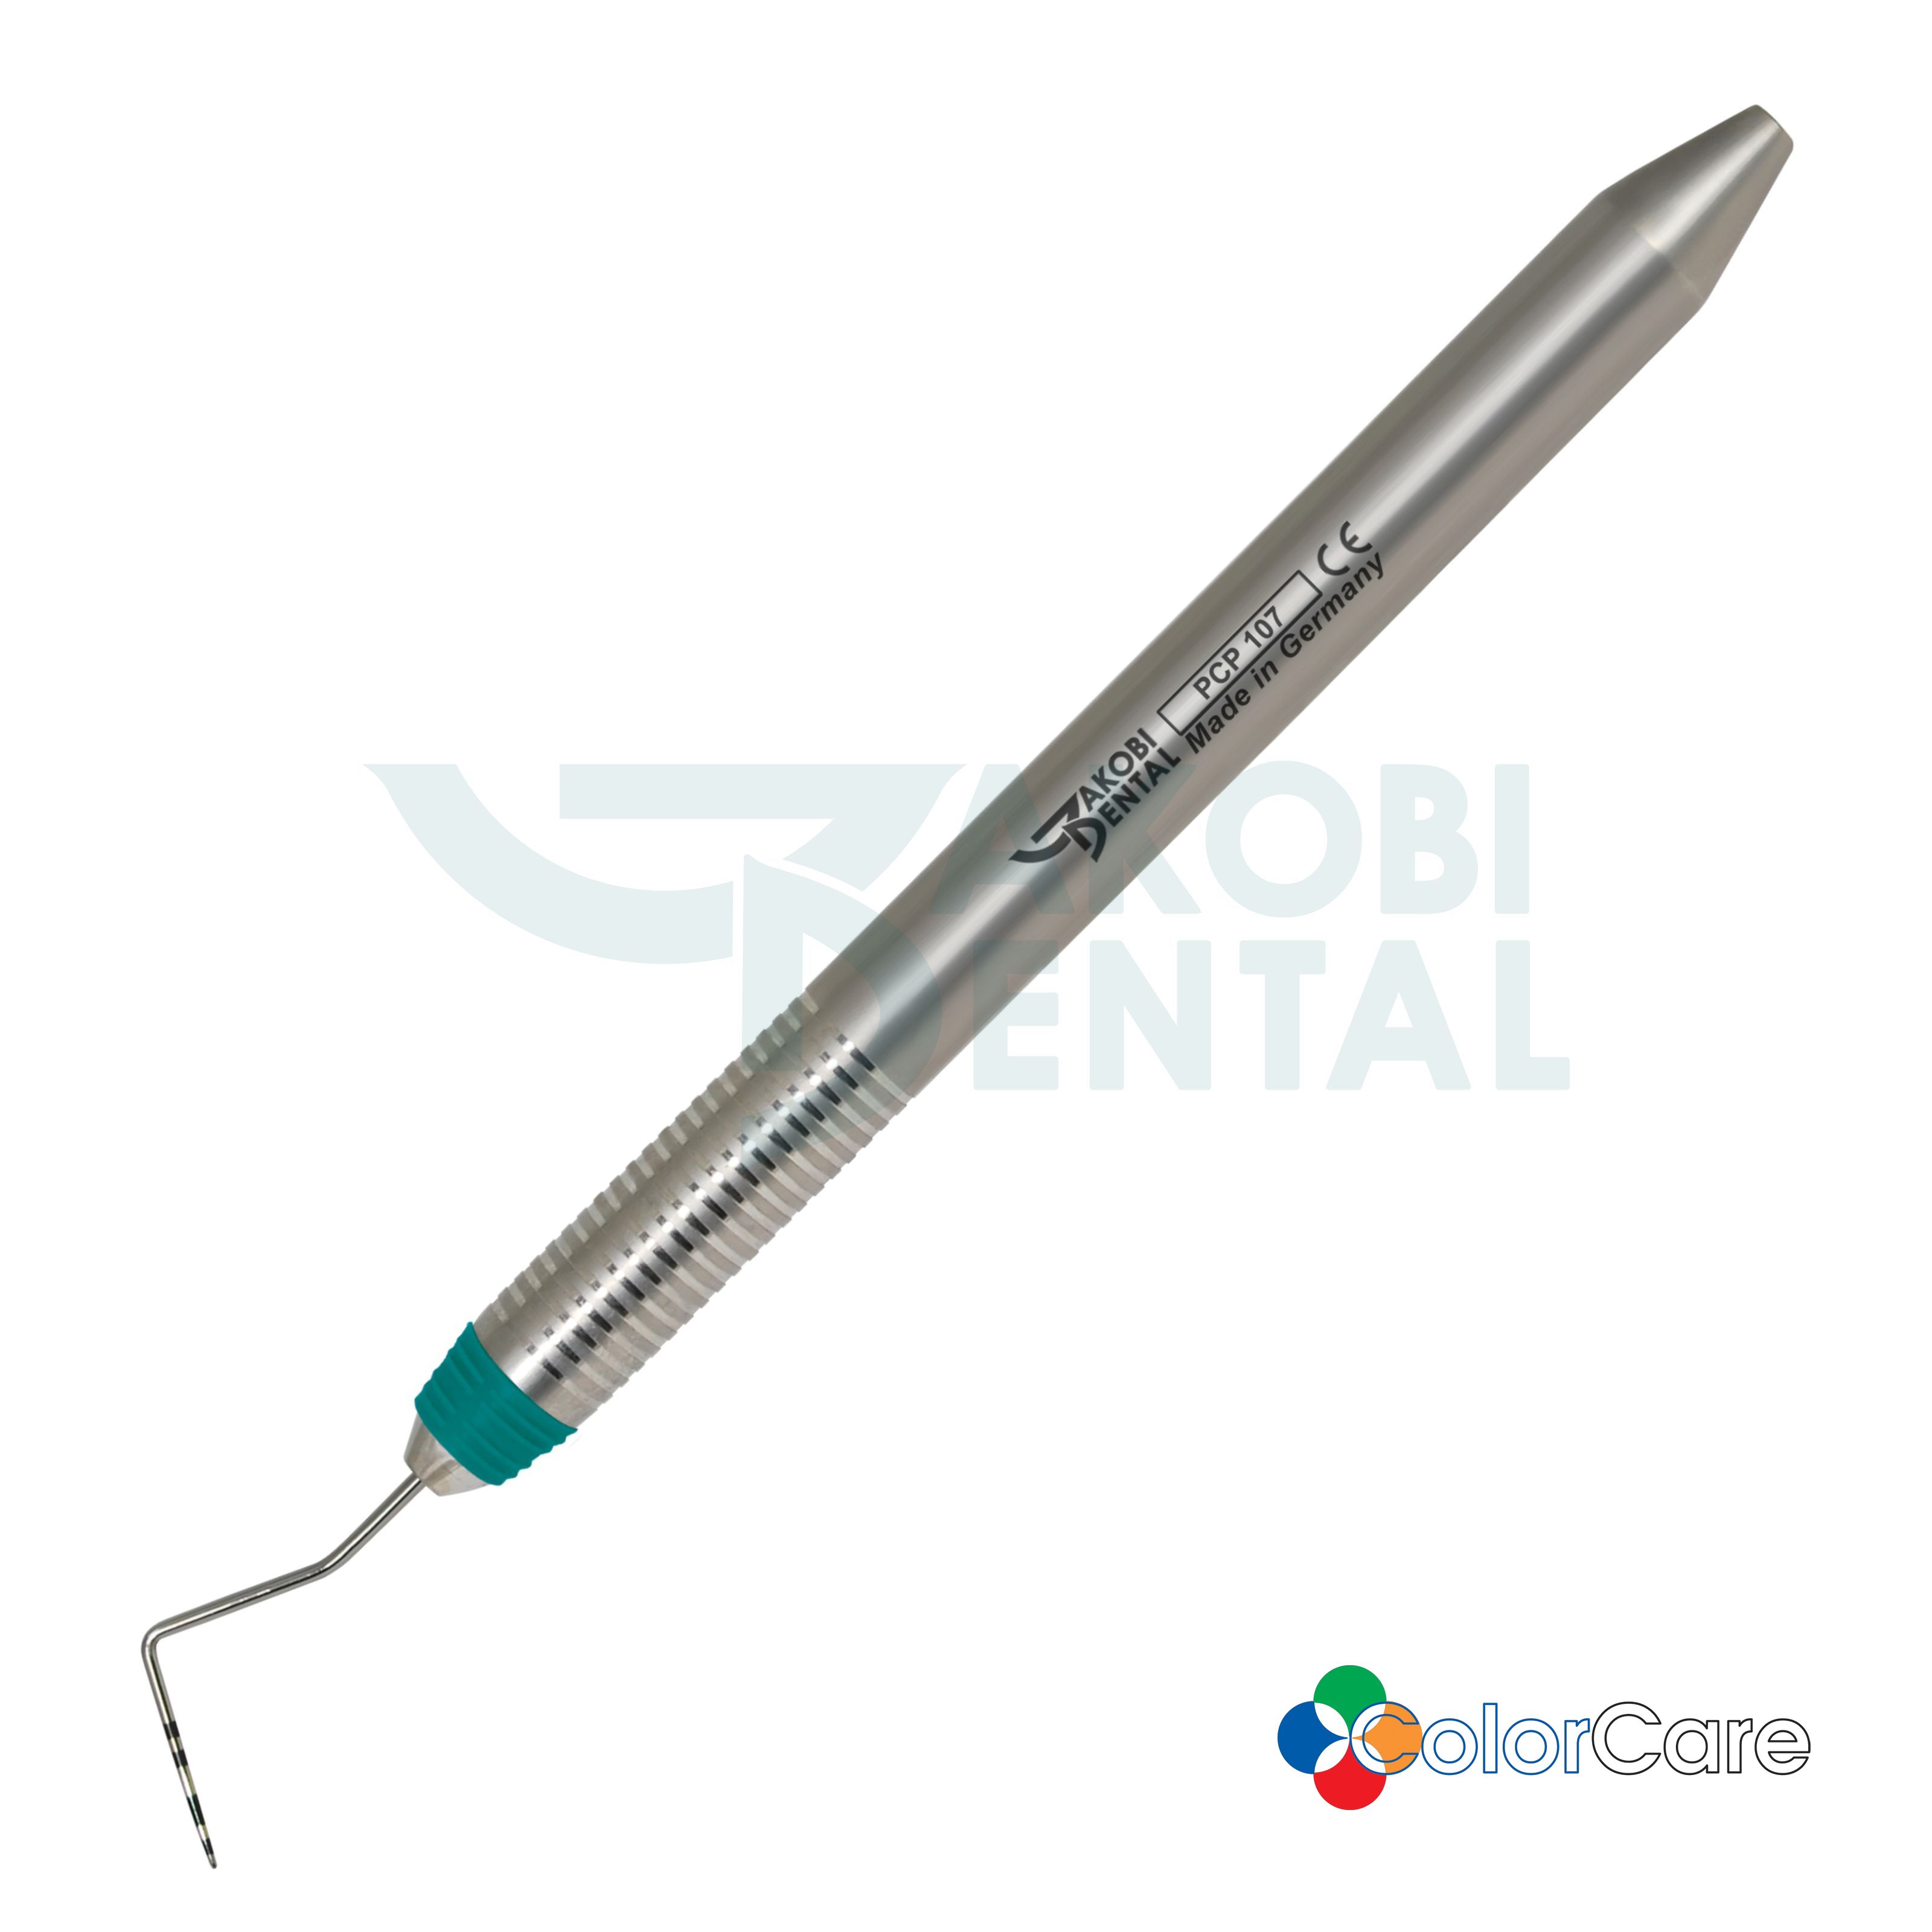 Periodontal probe PCP 10, ColorCare Handle # 7